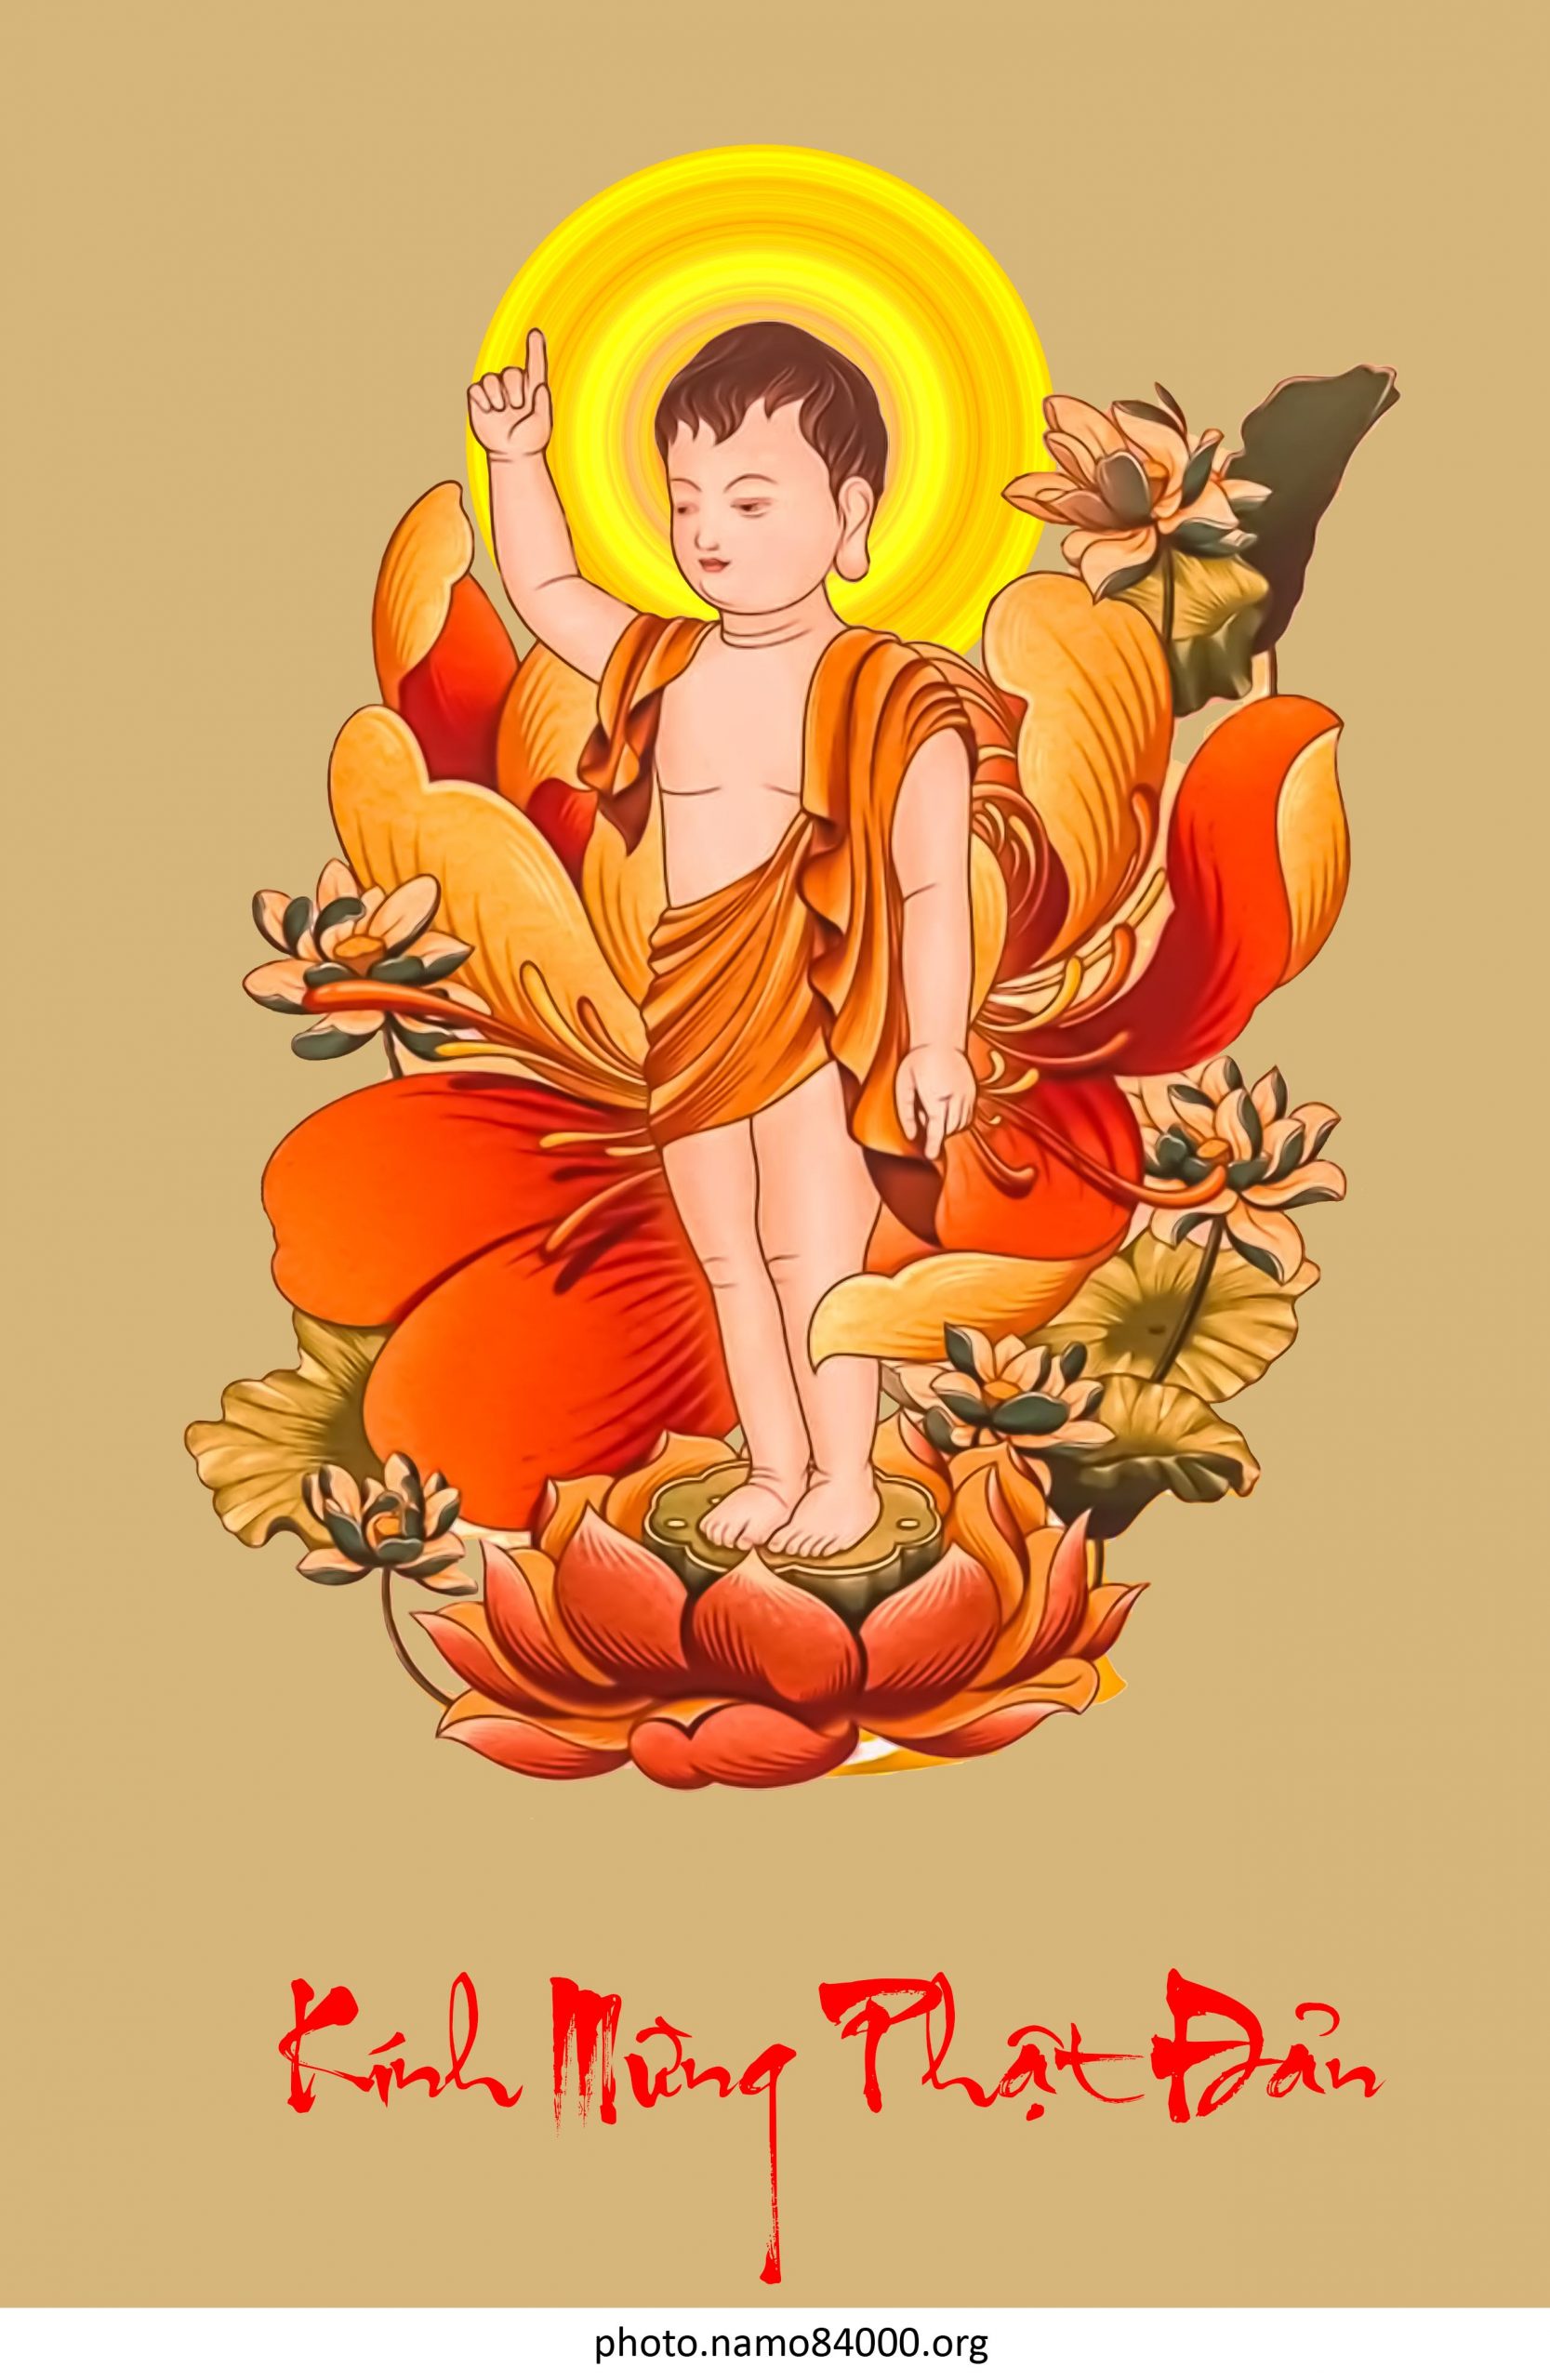 Tôn ảnh Phật Thích Ca Mâu Ni đản sanh – Images of Gotama Buddha’s the New-Born statue